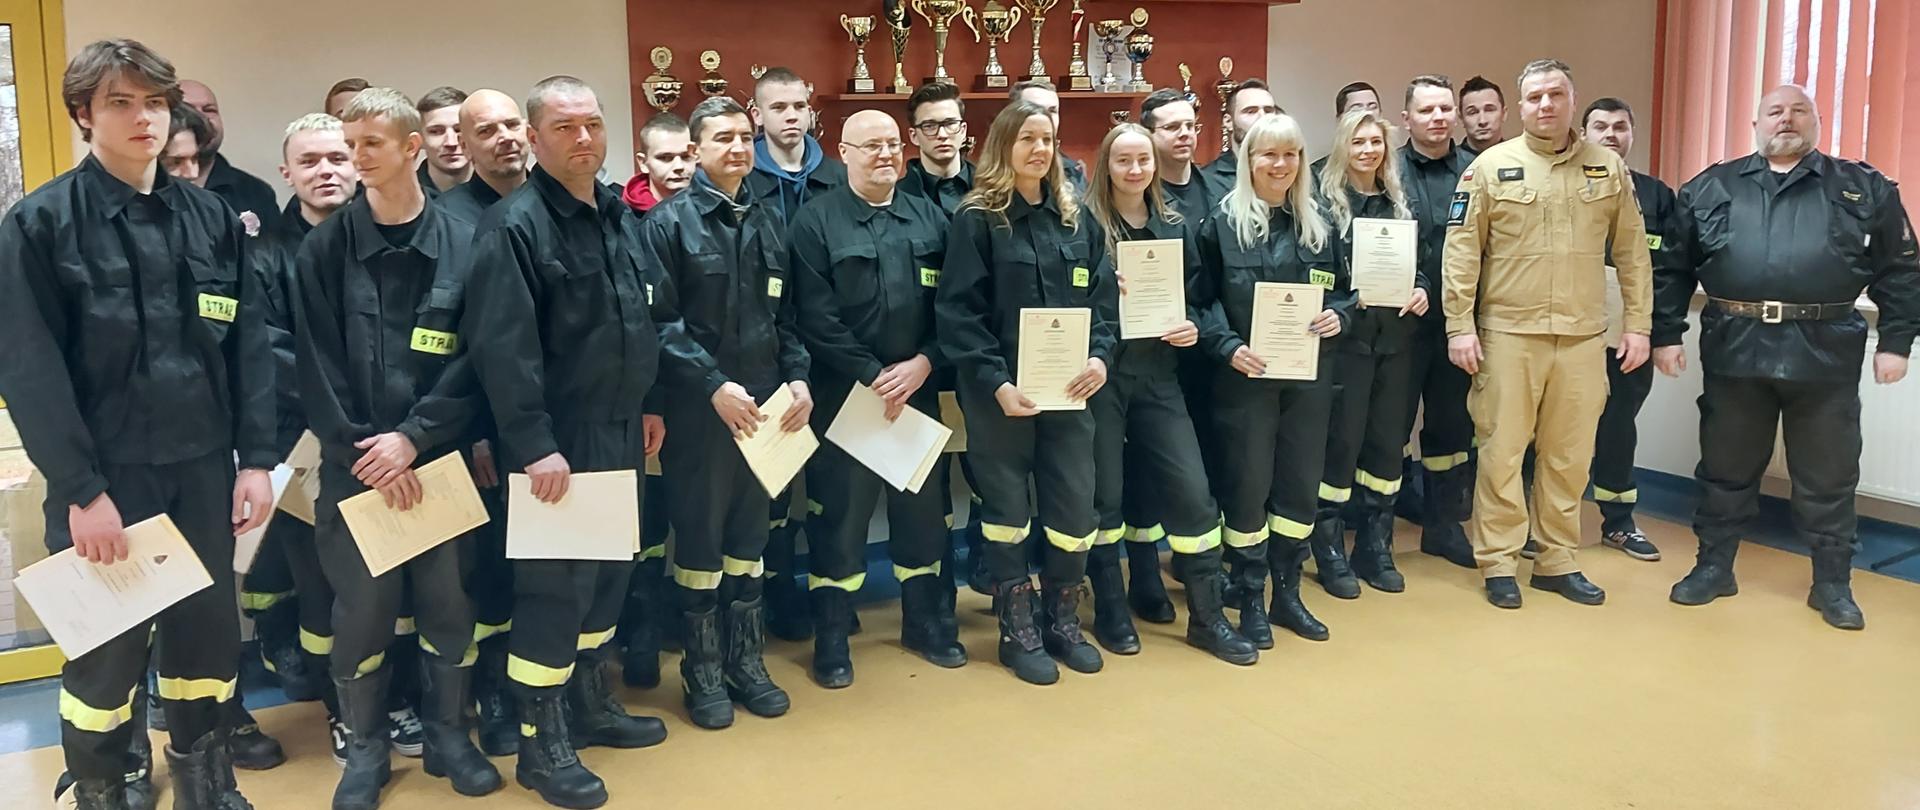 Strażacy ratownicy Ochotniczych Straży Pożarnych z wręczonymi zaświadczeniami o ukończonym kursie podstawowym